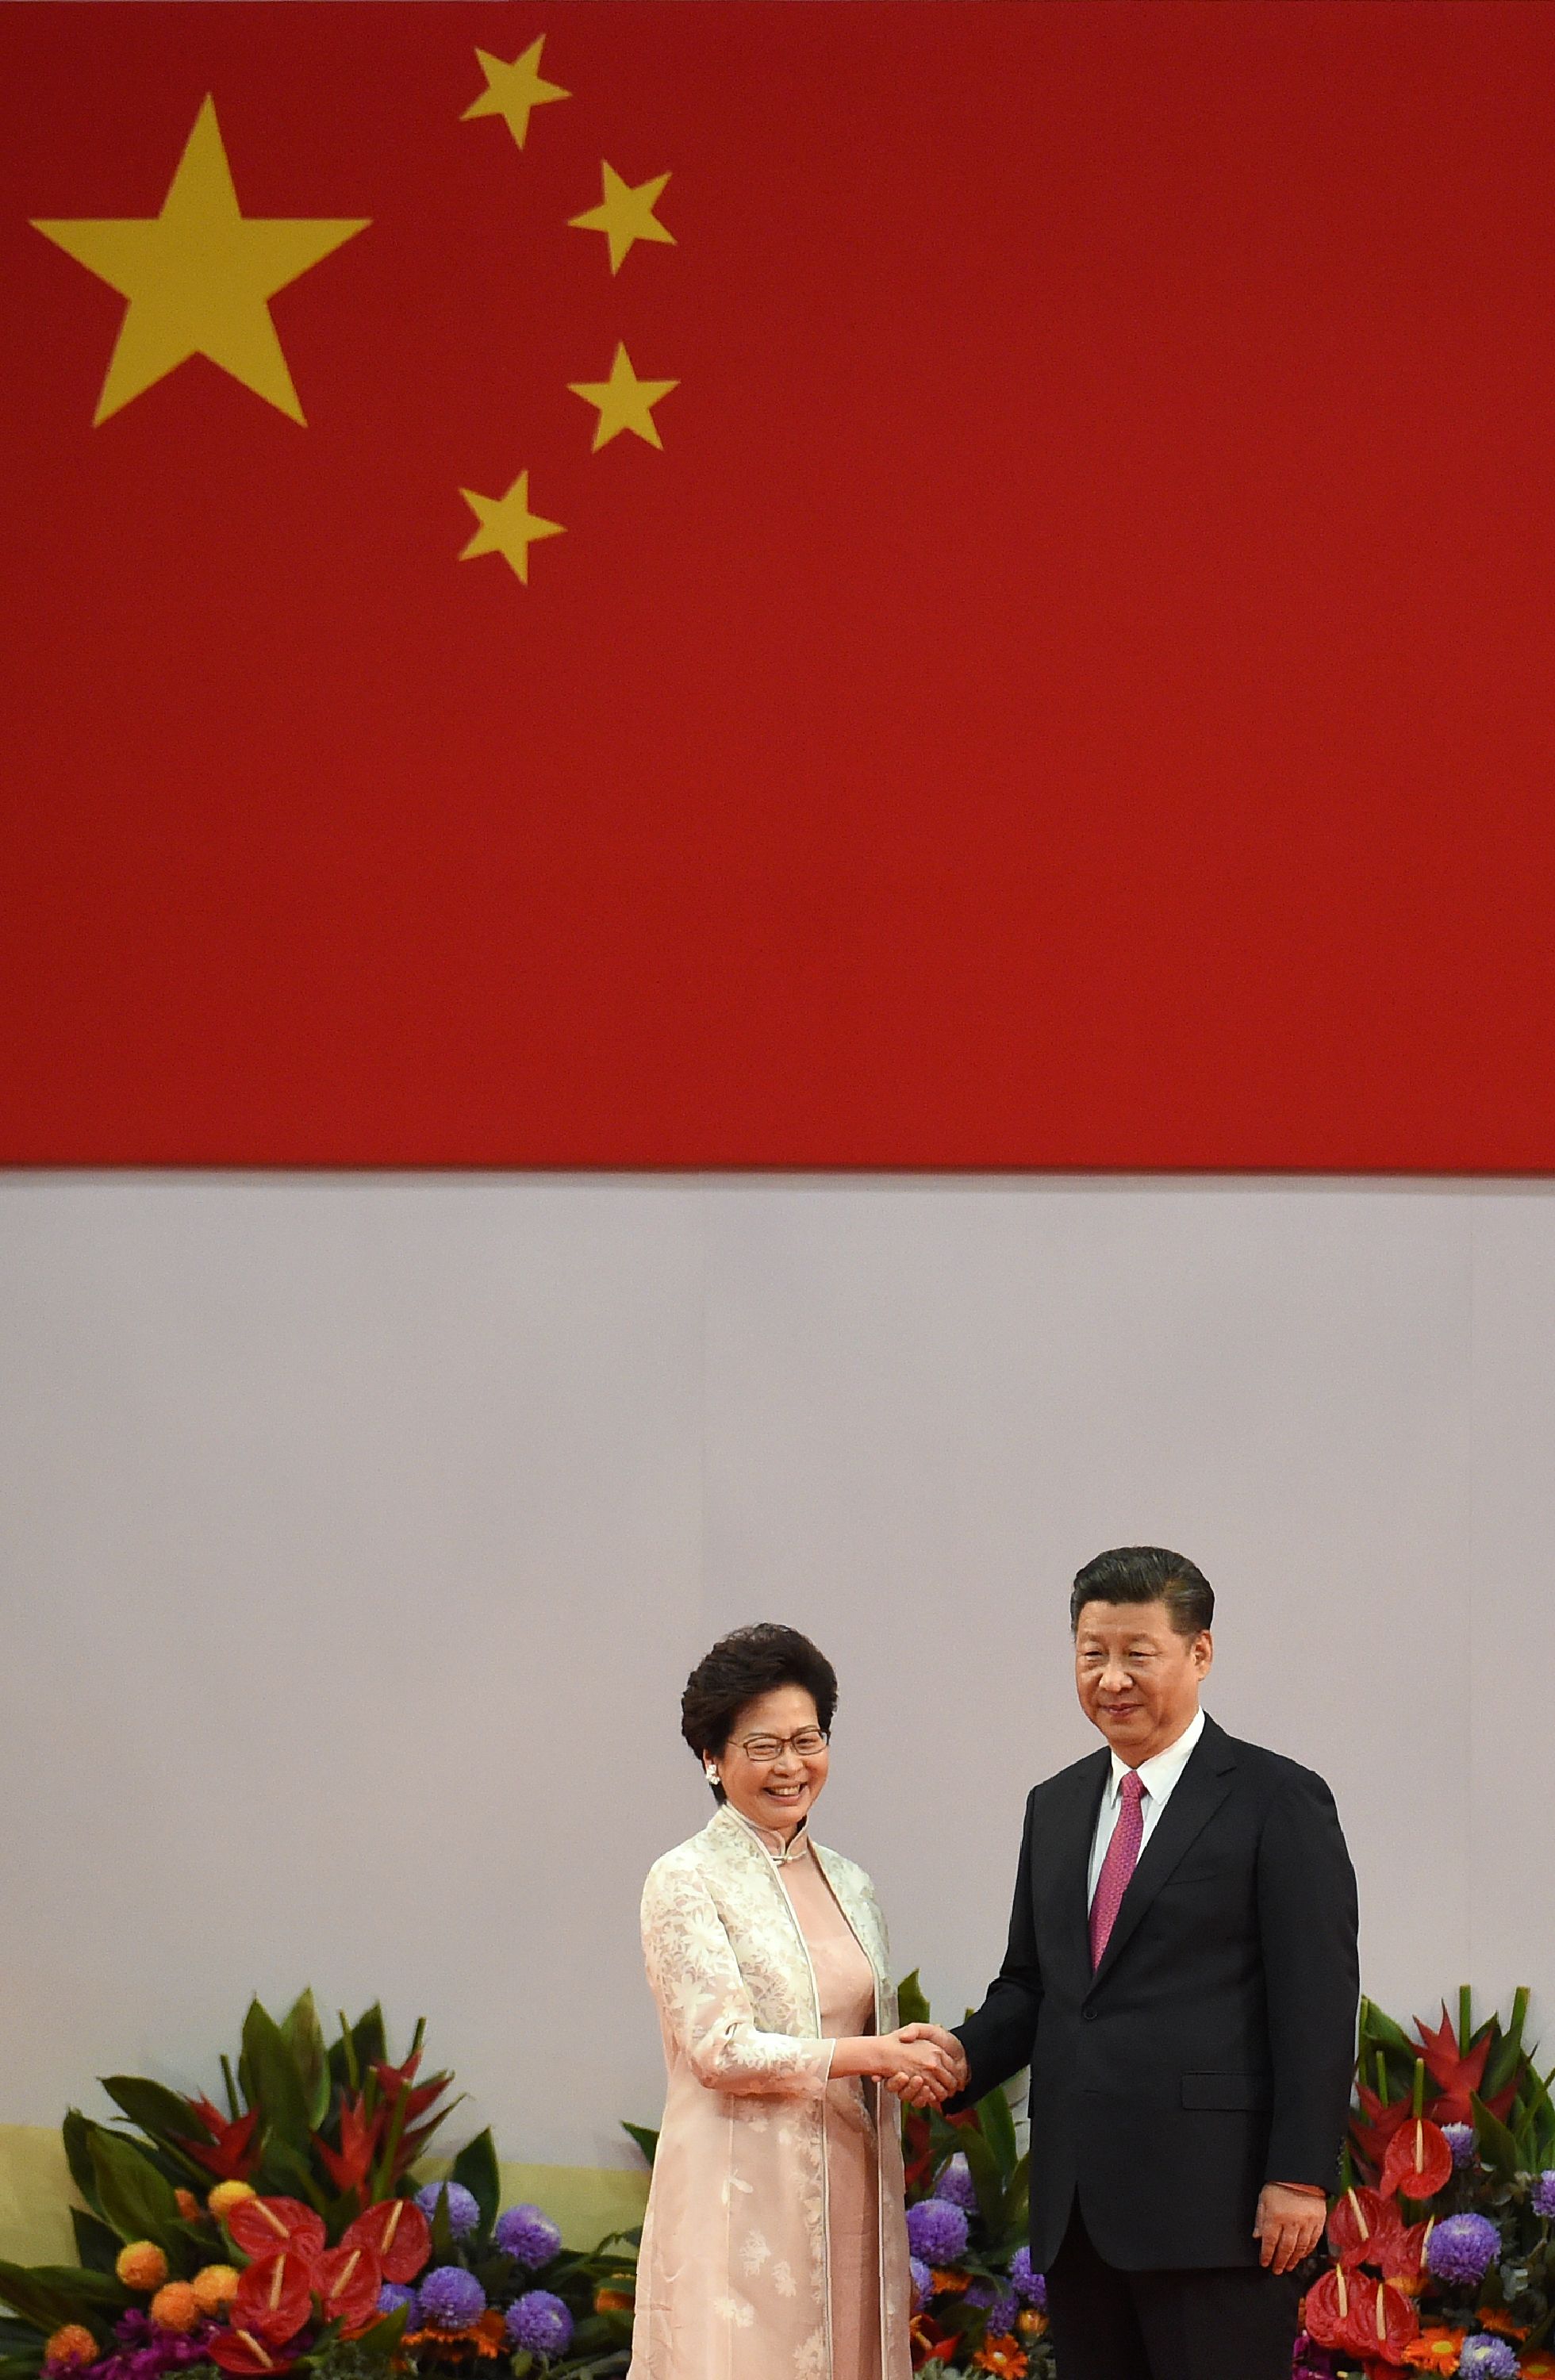 كارى لام الرئيسة التنفيذية الجديدة لهونج كونج والرئيس الصينى